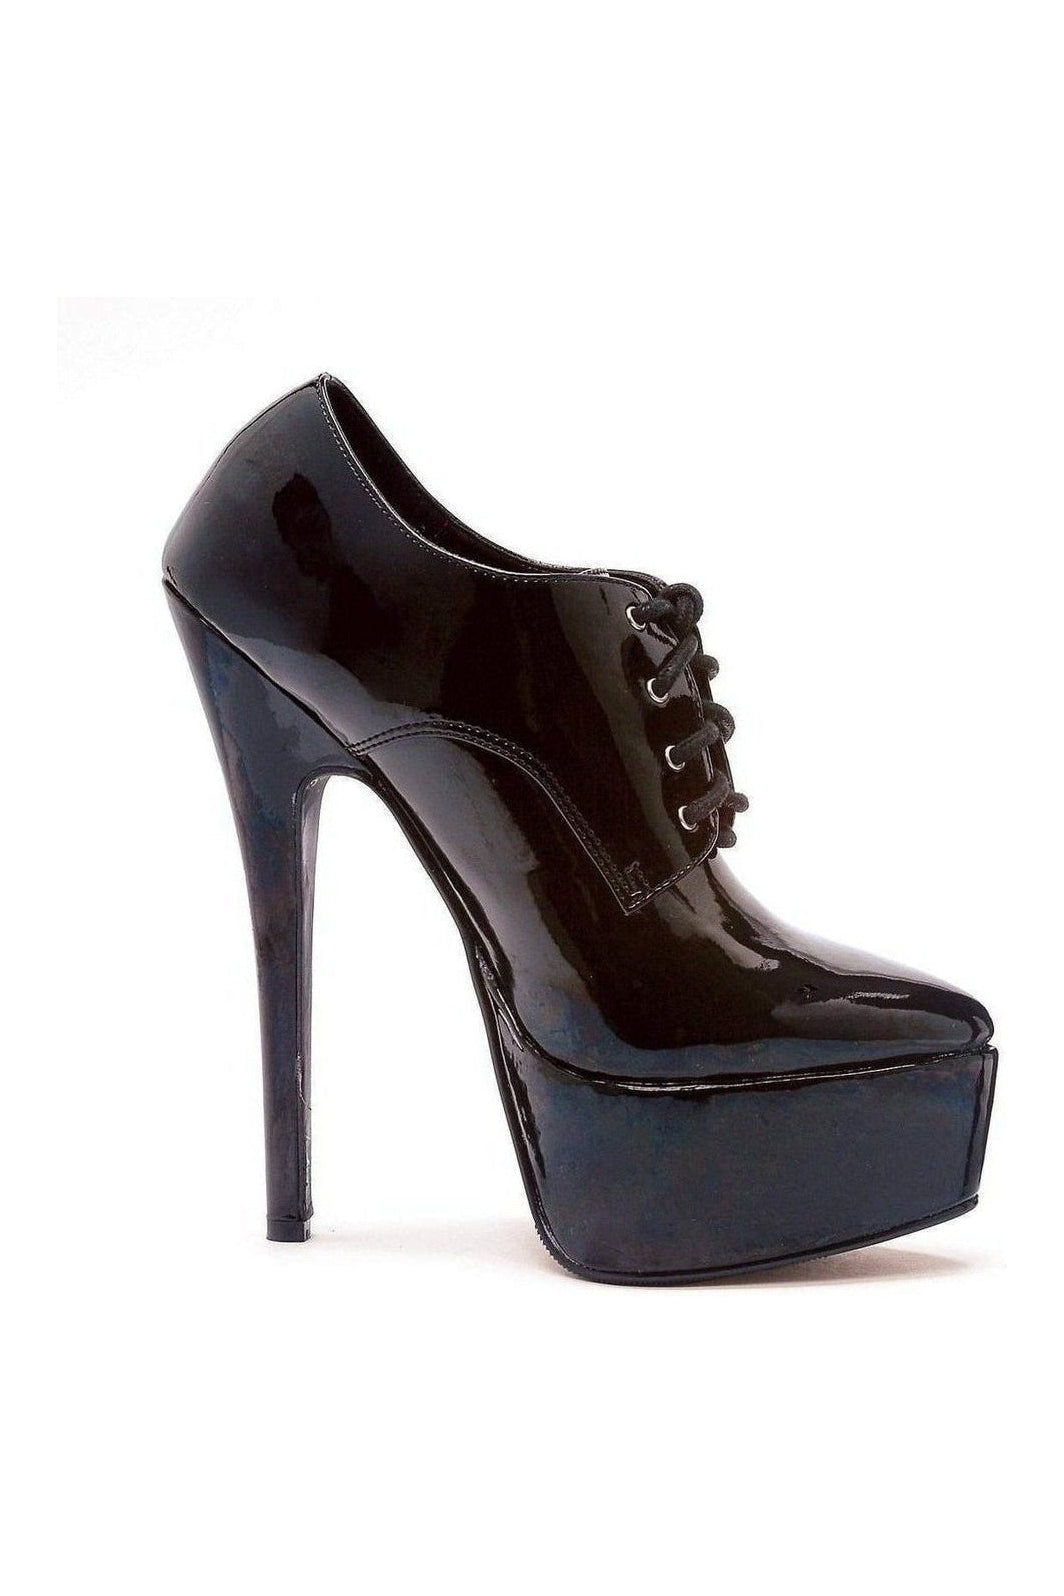 652-OXFORD Platform Pump | Black Patent-Pumps- Stripper Shoes at SEXYSHOES.COM